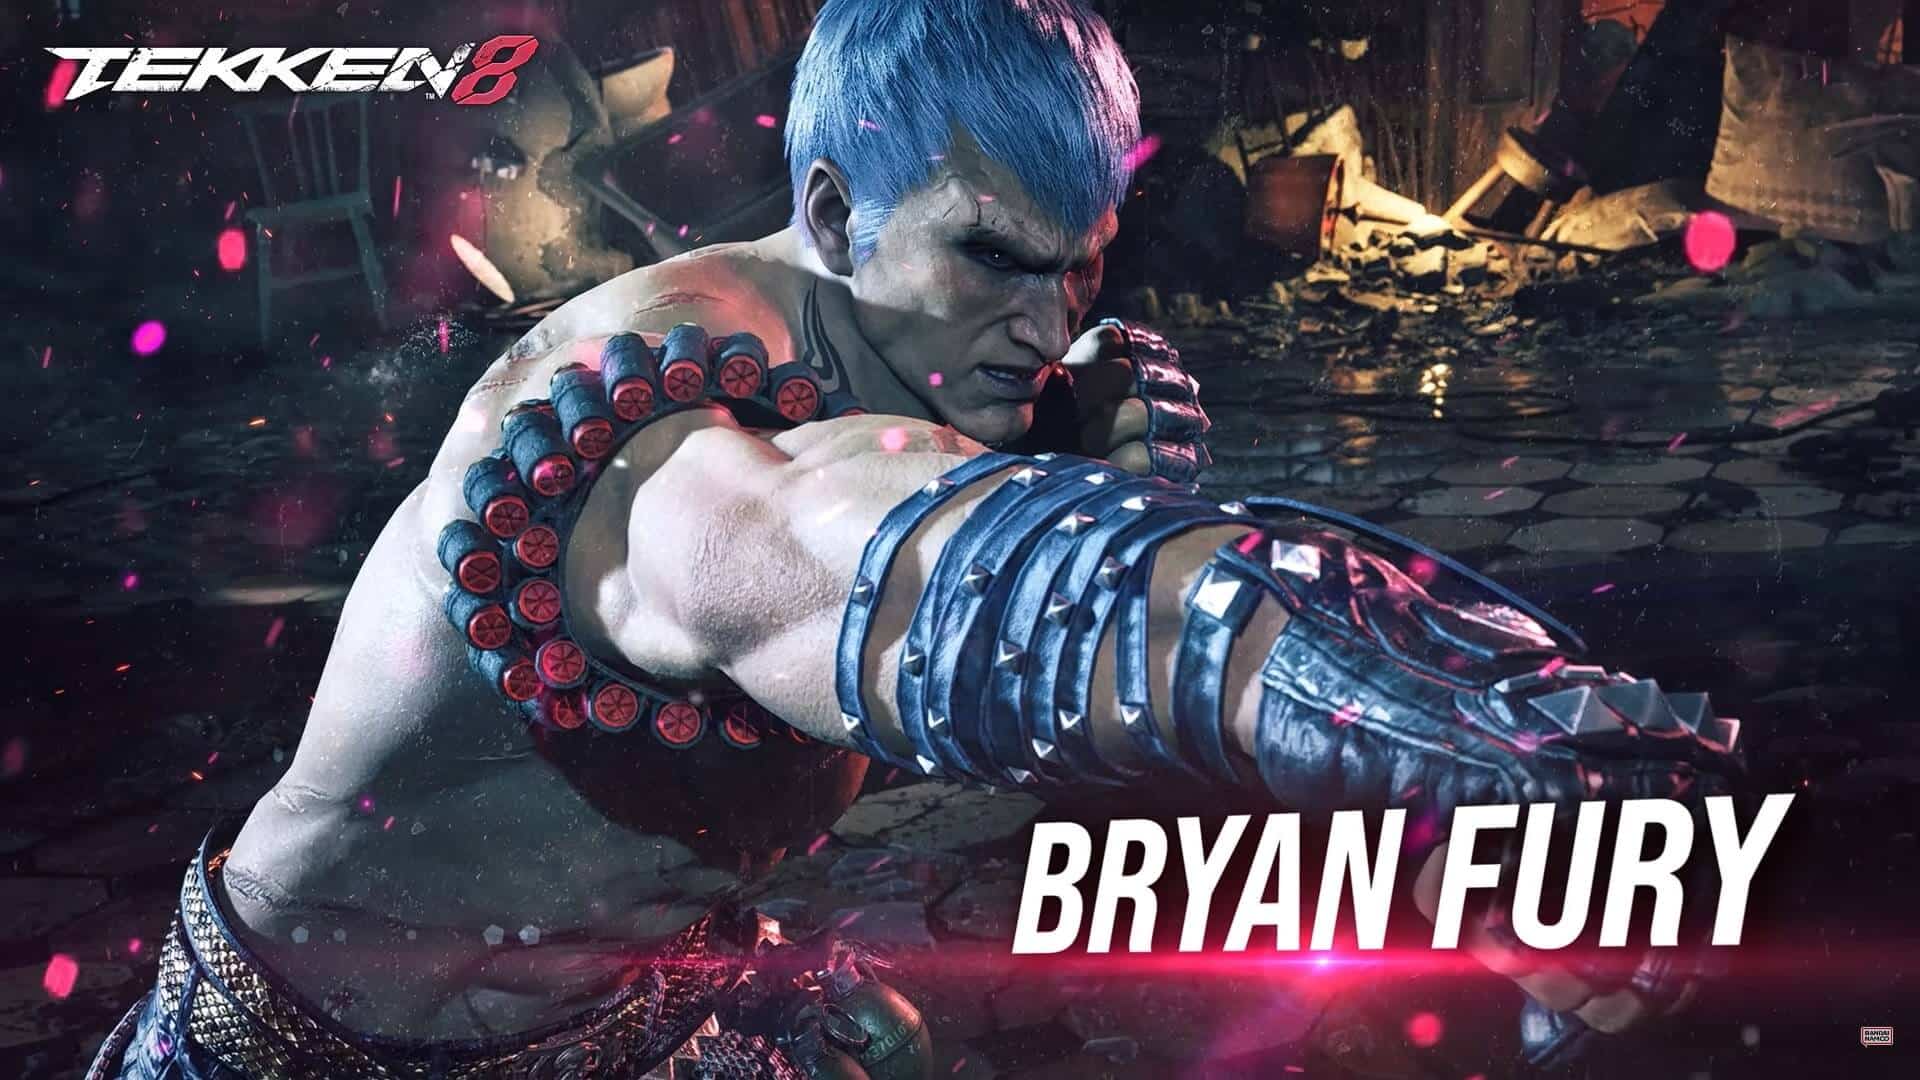 Tekken-8-Psycho-Cyborg-Bryan-Fury-r-ckt-ins-Rampenlicht